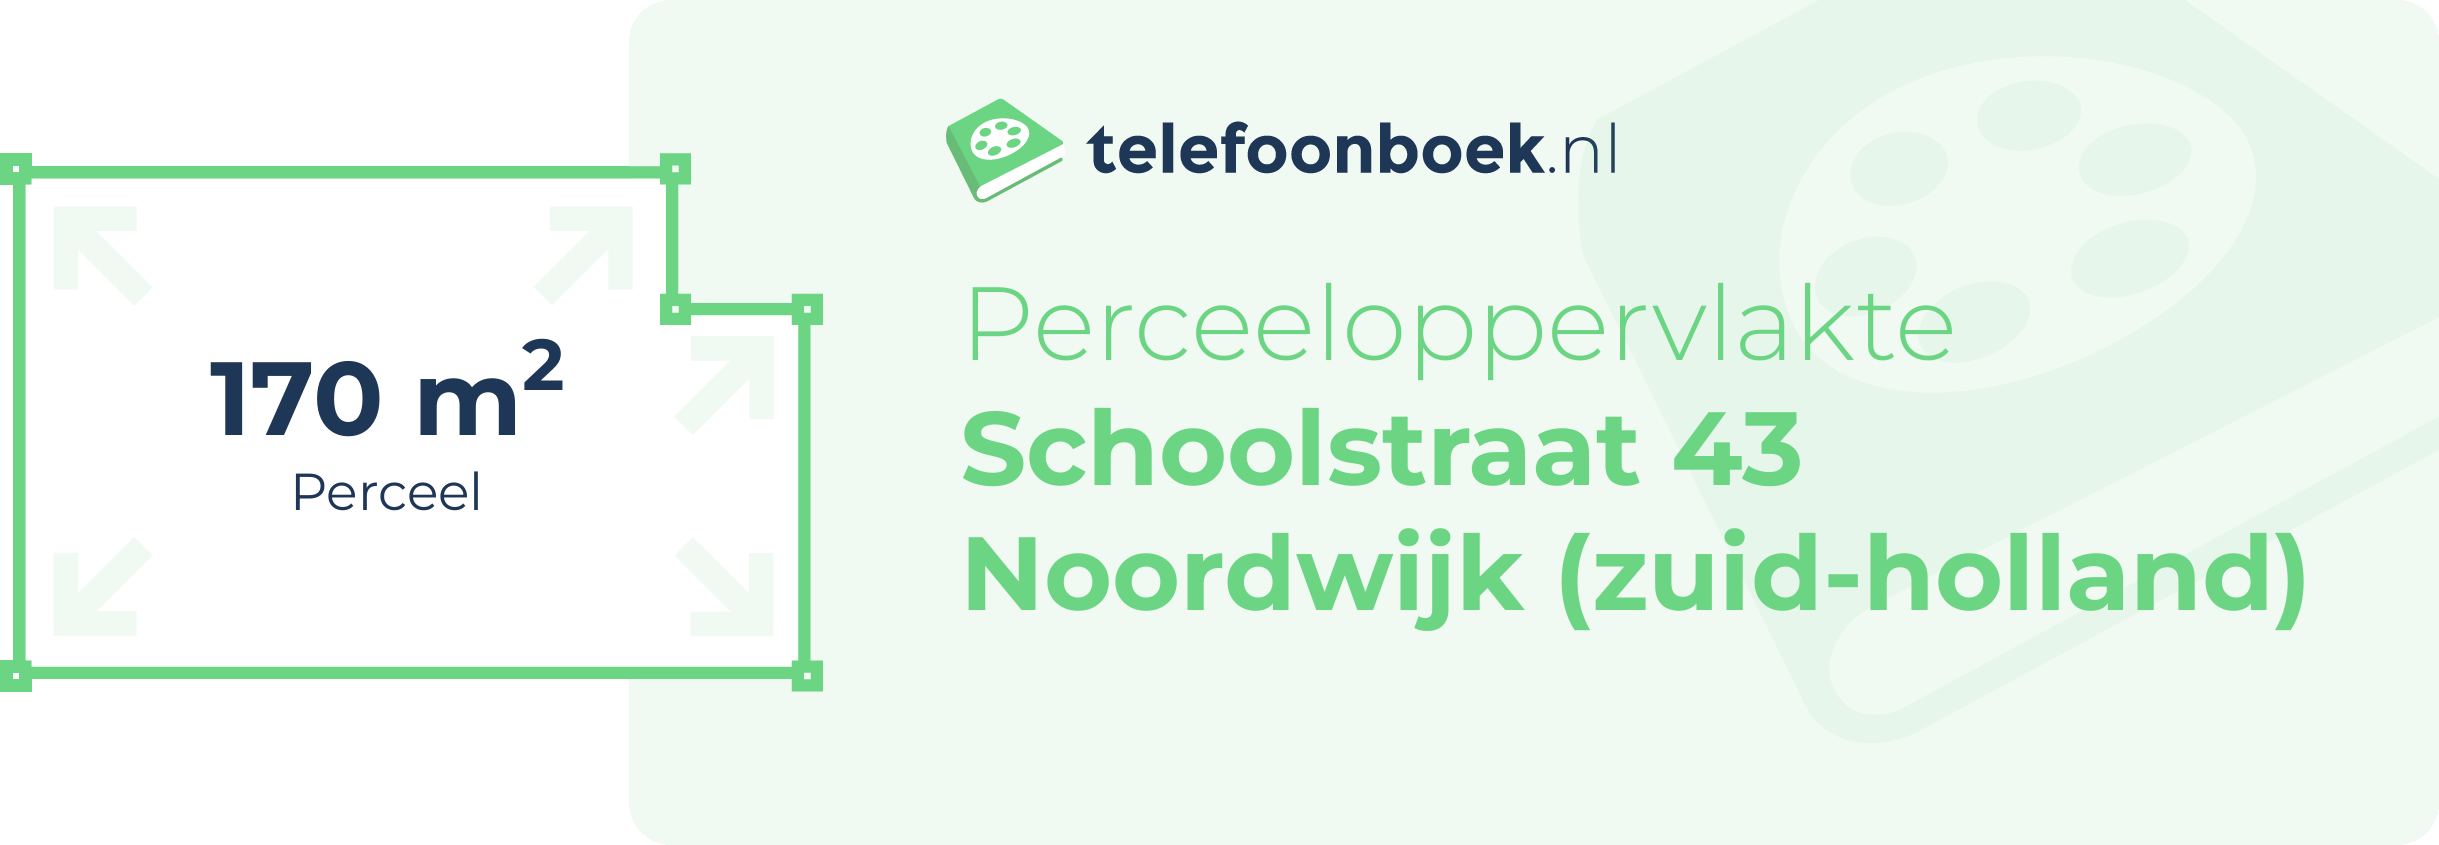 Perceeloppervlakte Schoolstraat 43 Noordwijk (Zuid-Holland)